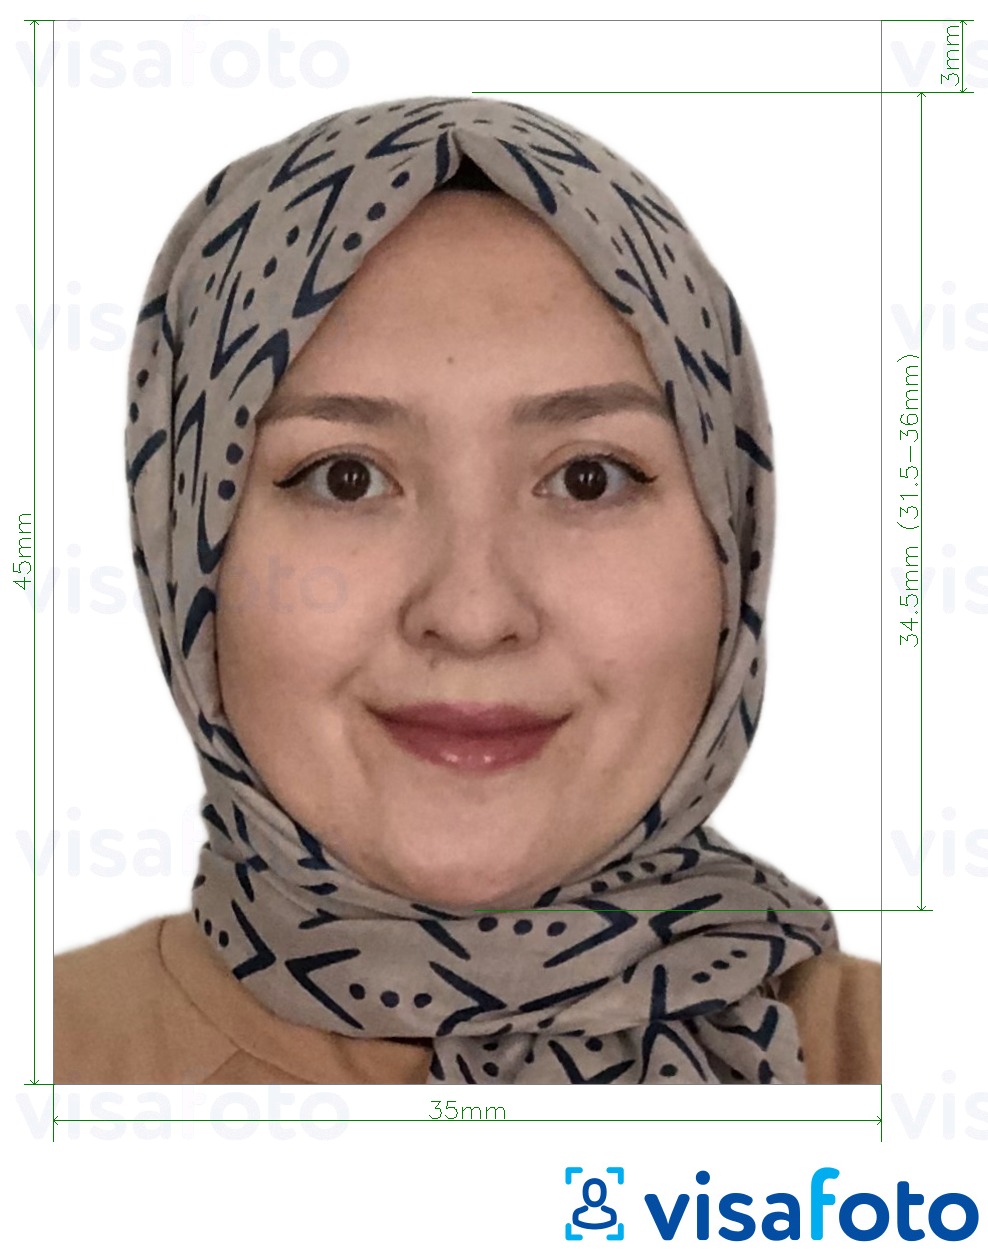 Exemple de foto per a Visa d'Afganistan 35x45 mm (3,5x4,5 cm) amb la mida exacta especificada